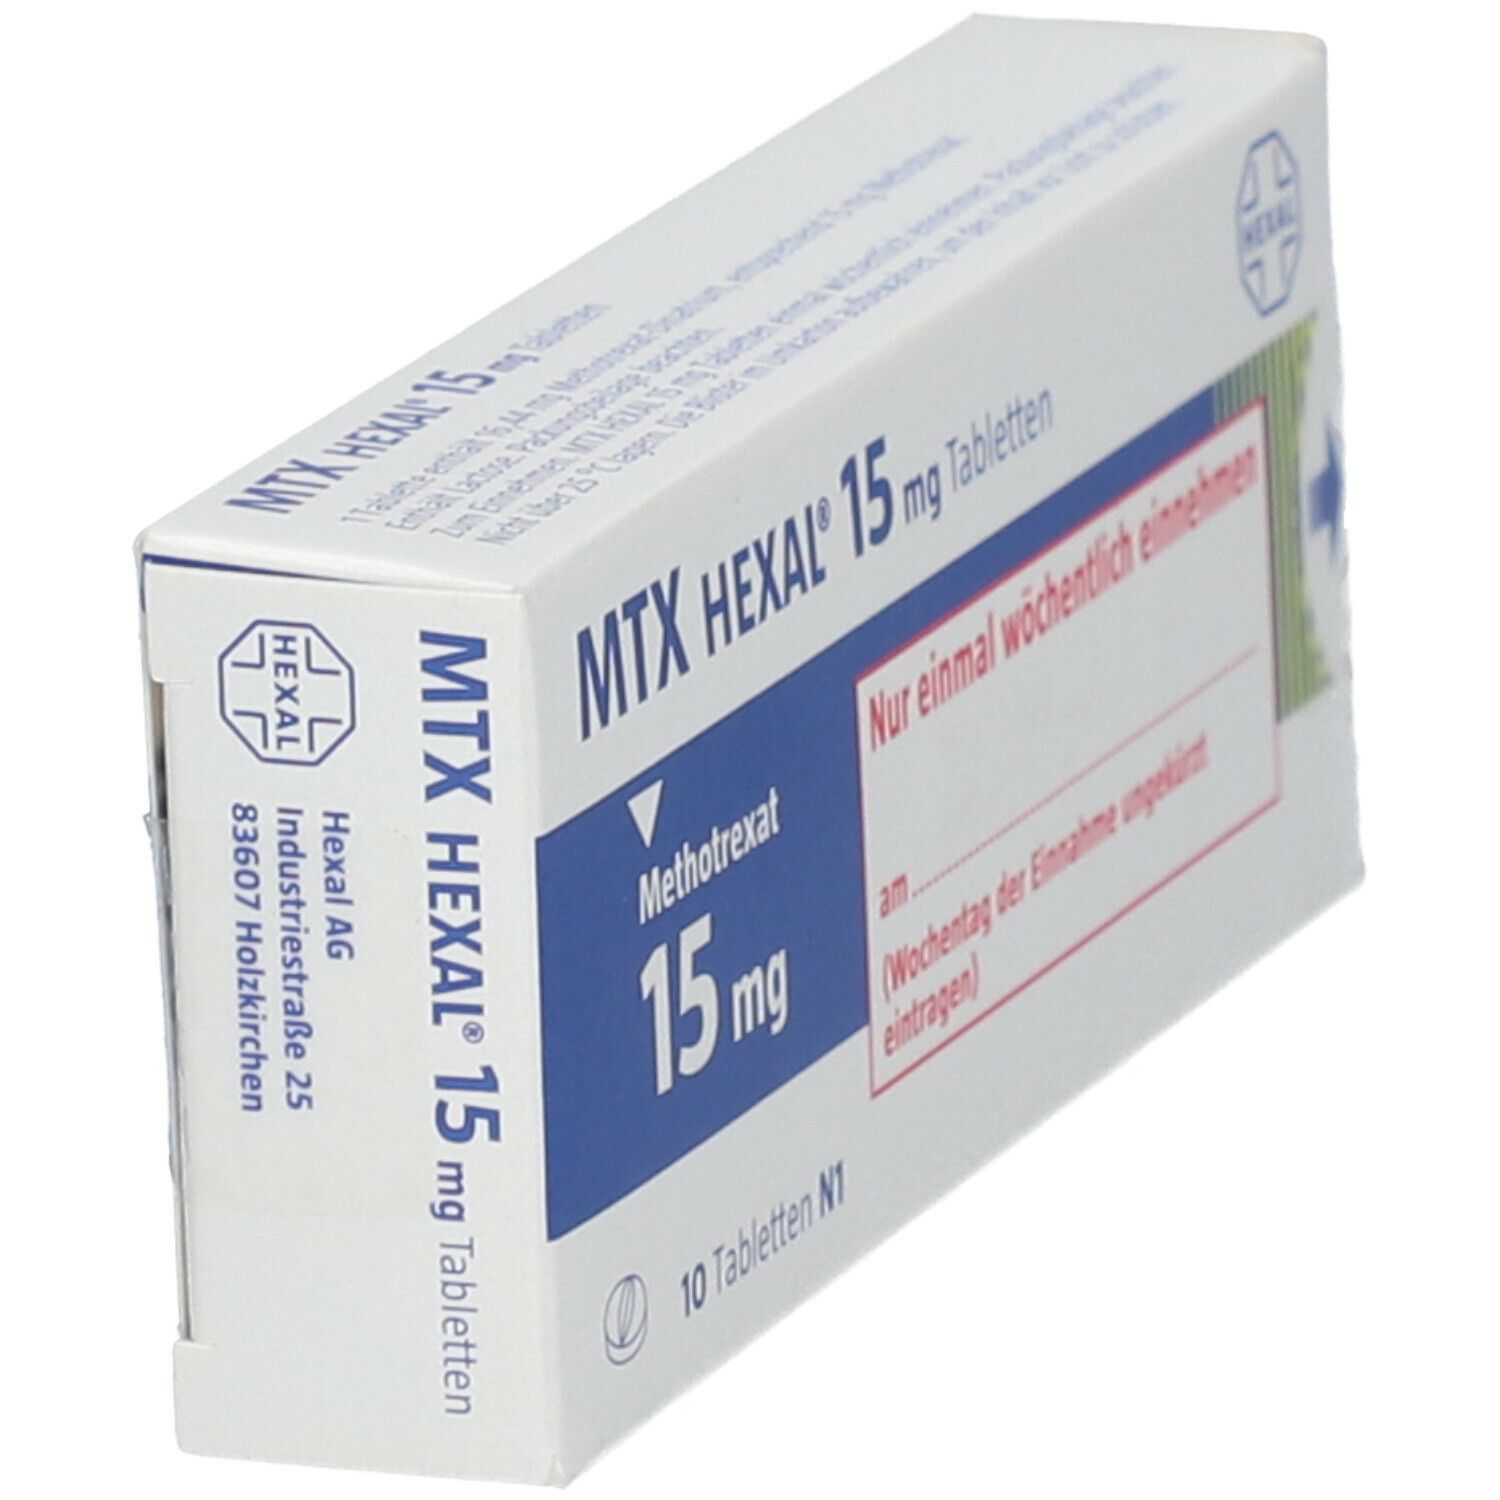 MTX HEXAL® 15 mg